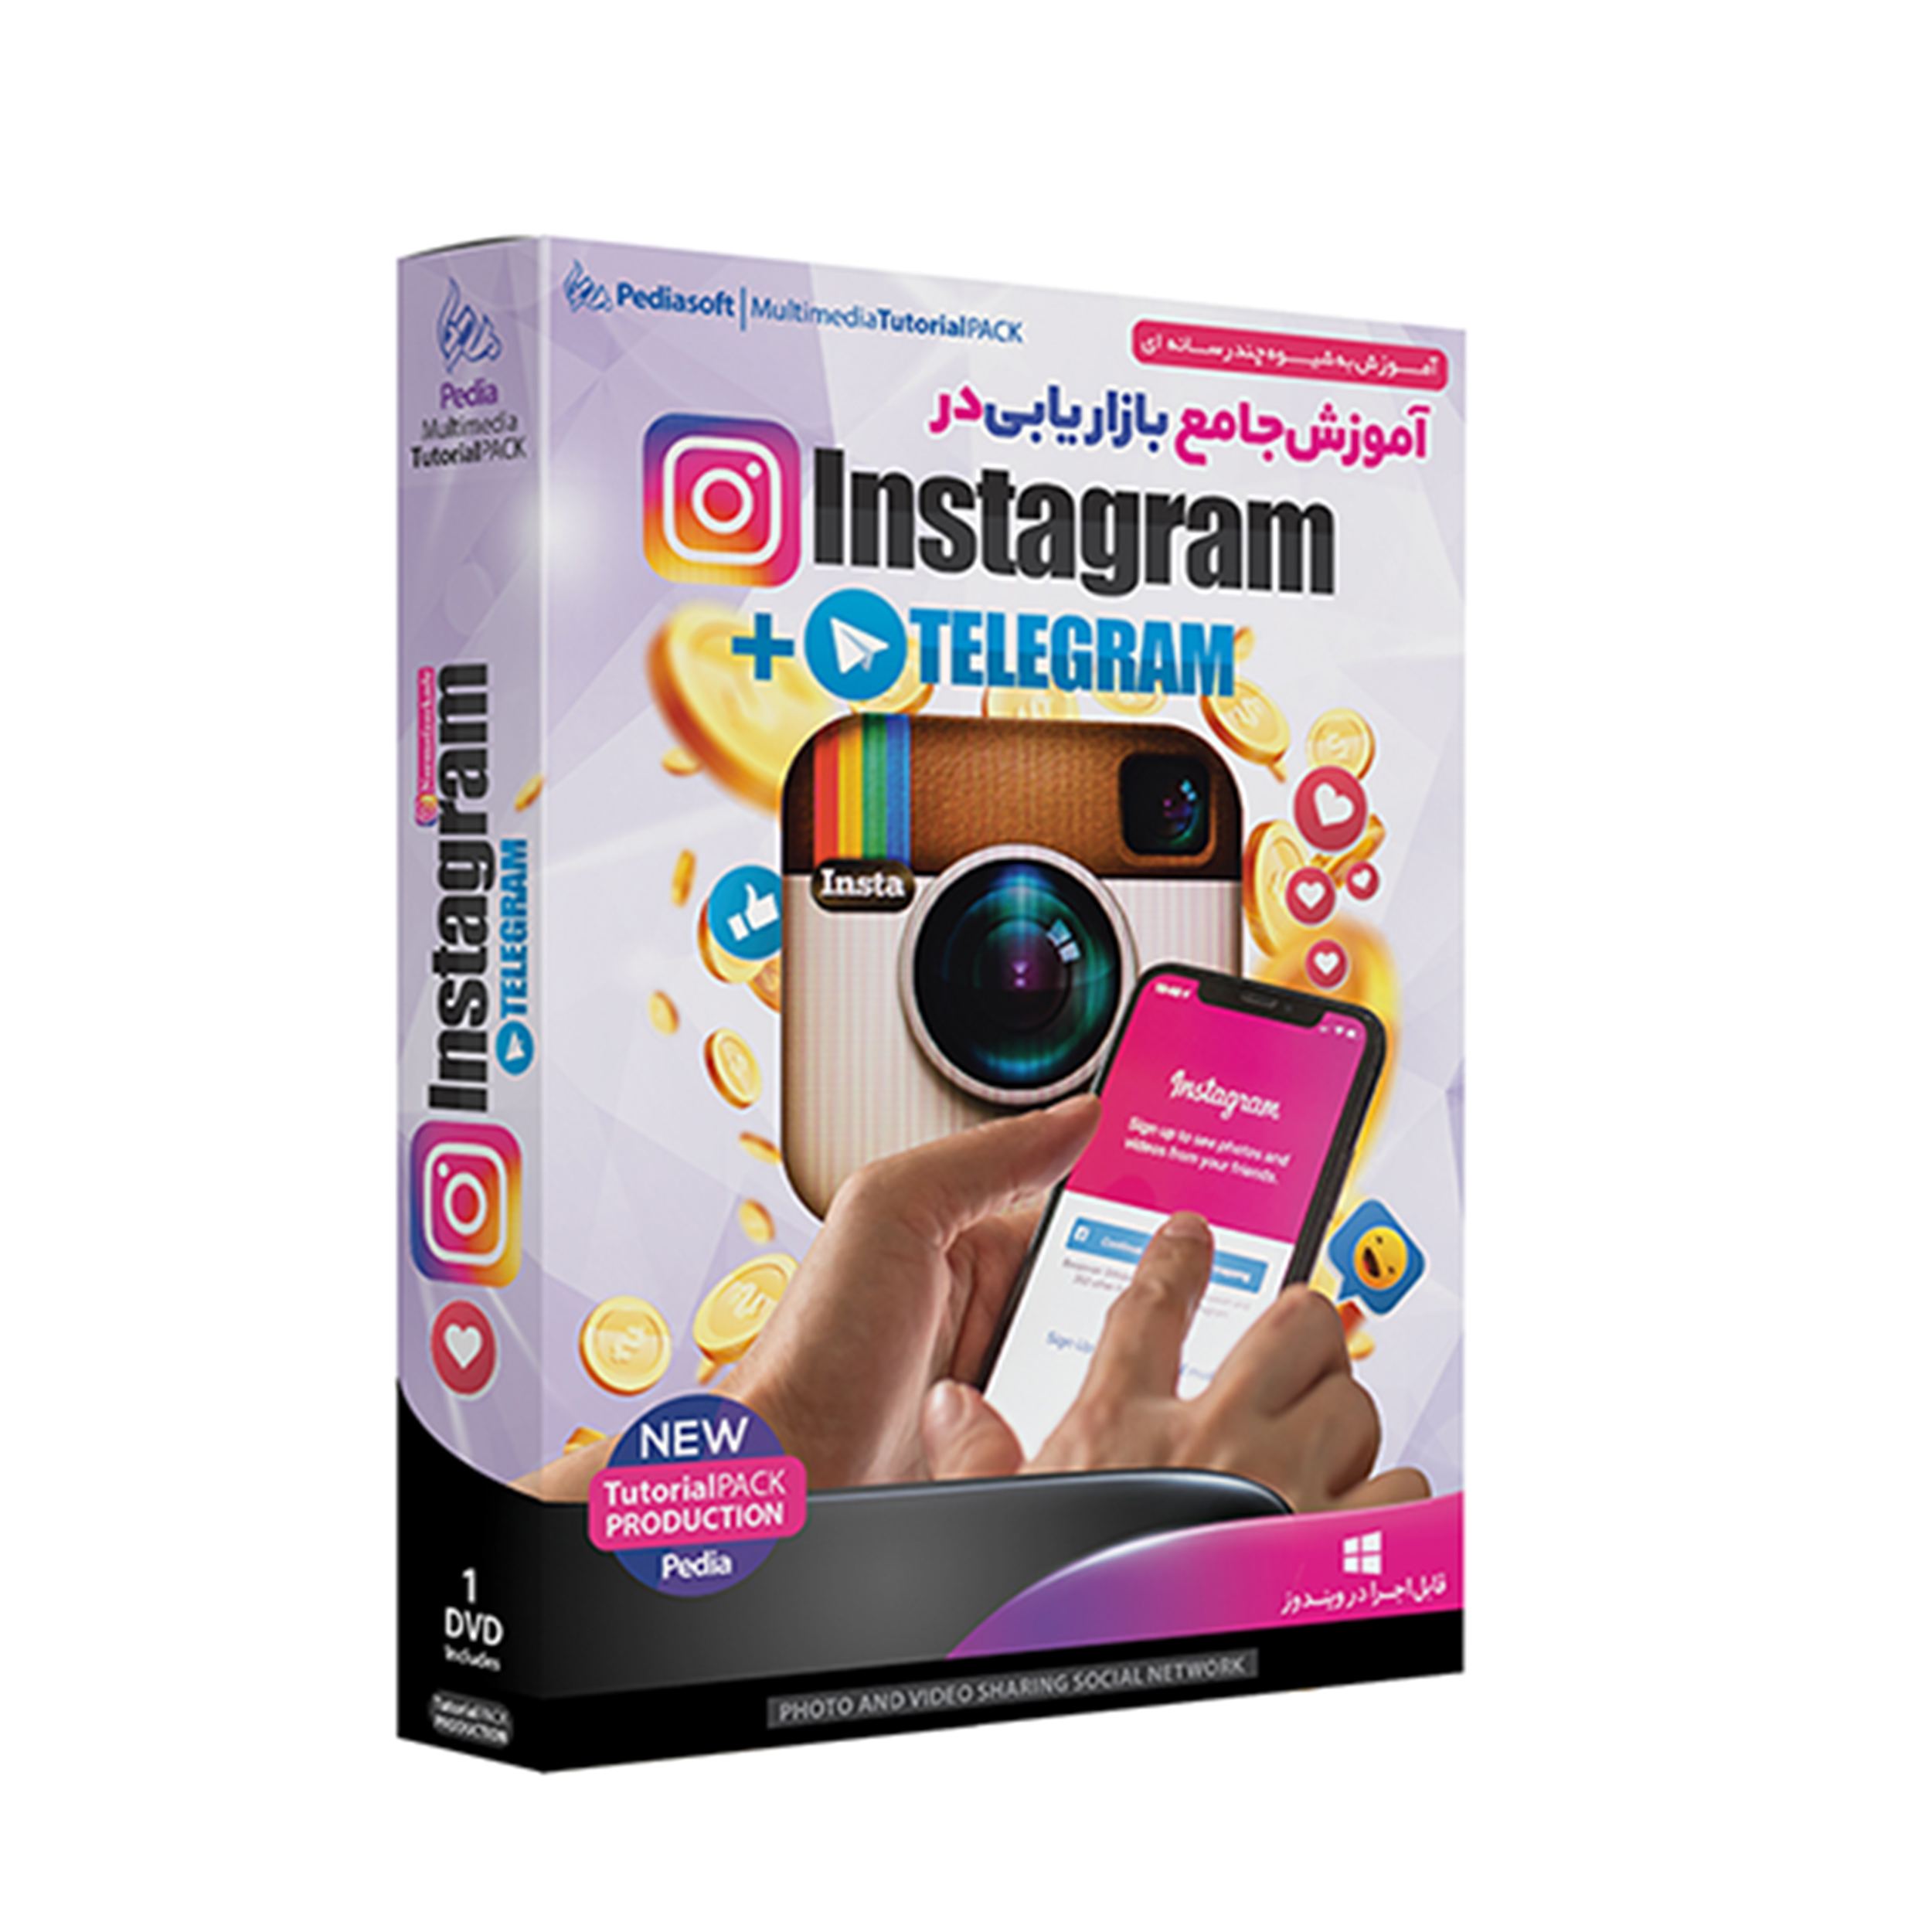 نرم افزار آموزش جامع بازاریابی در Instagram + Telegram نشر پدیا سافت